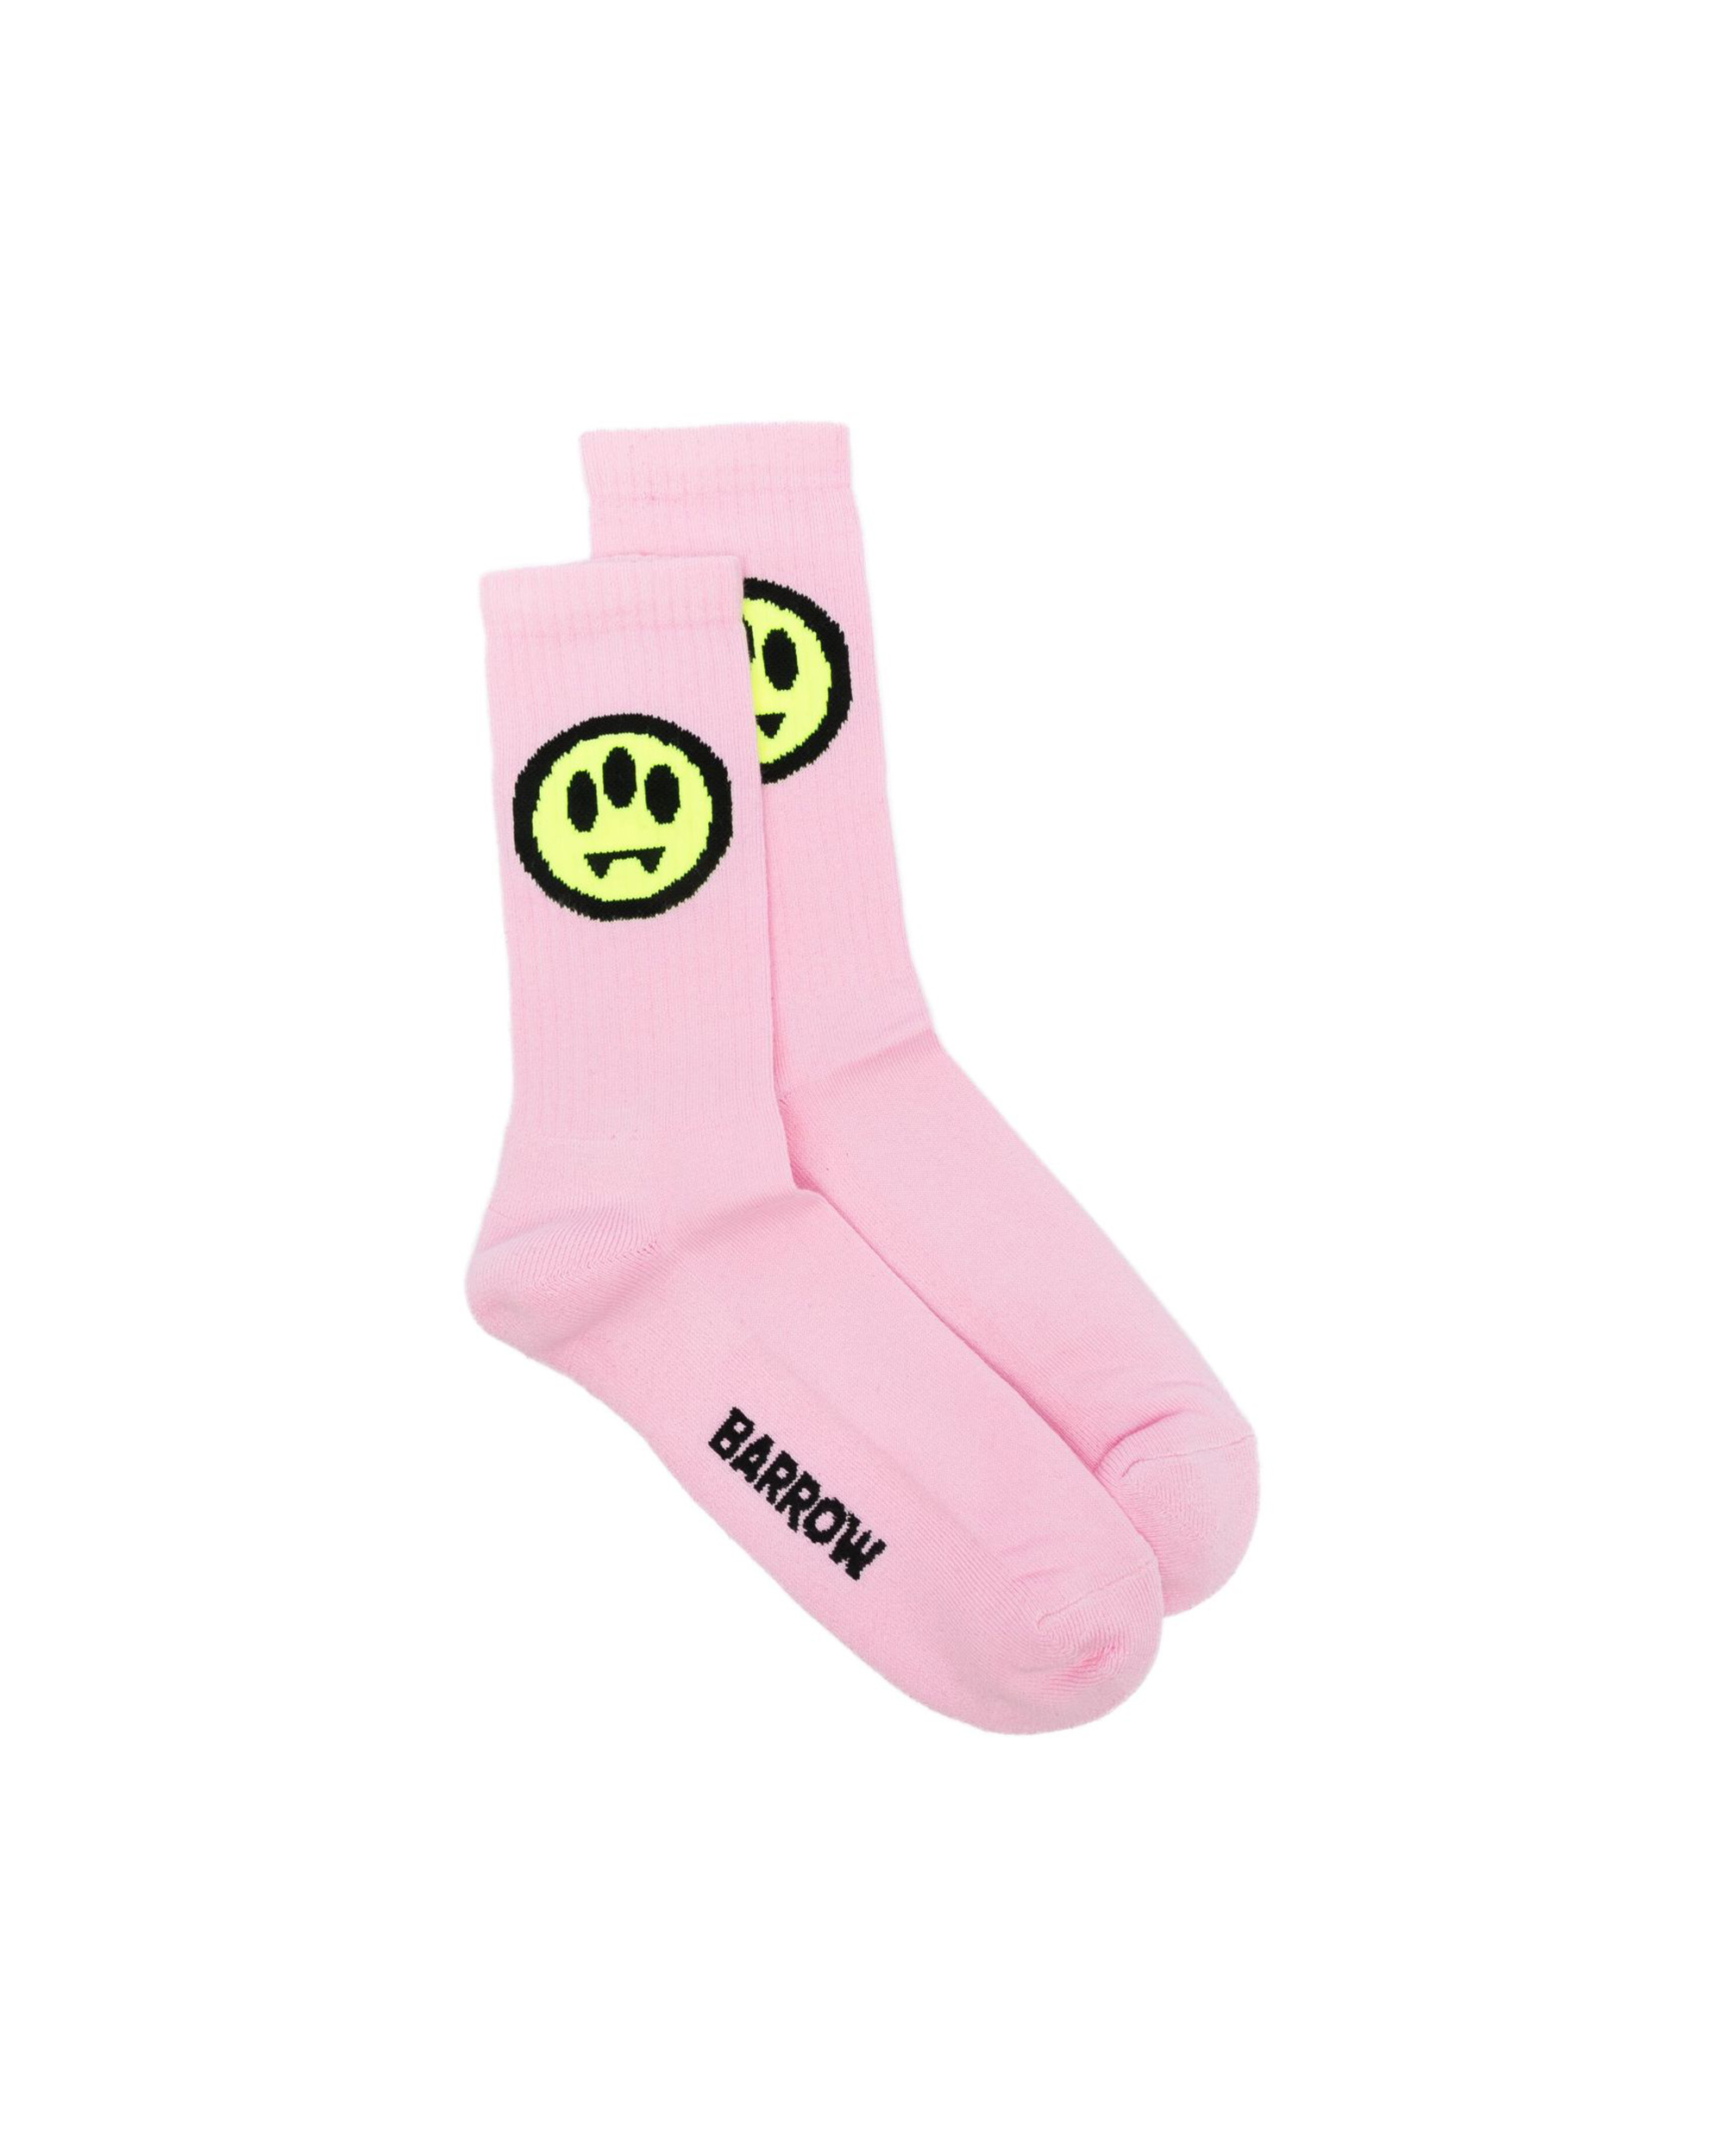 Barrow Unisex Pink Logo Socks In Bw014pink Lavander